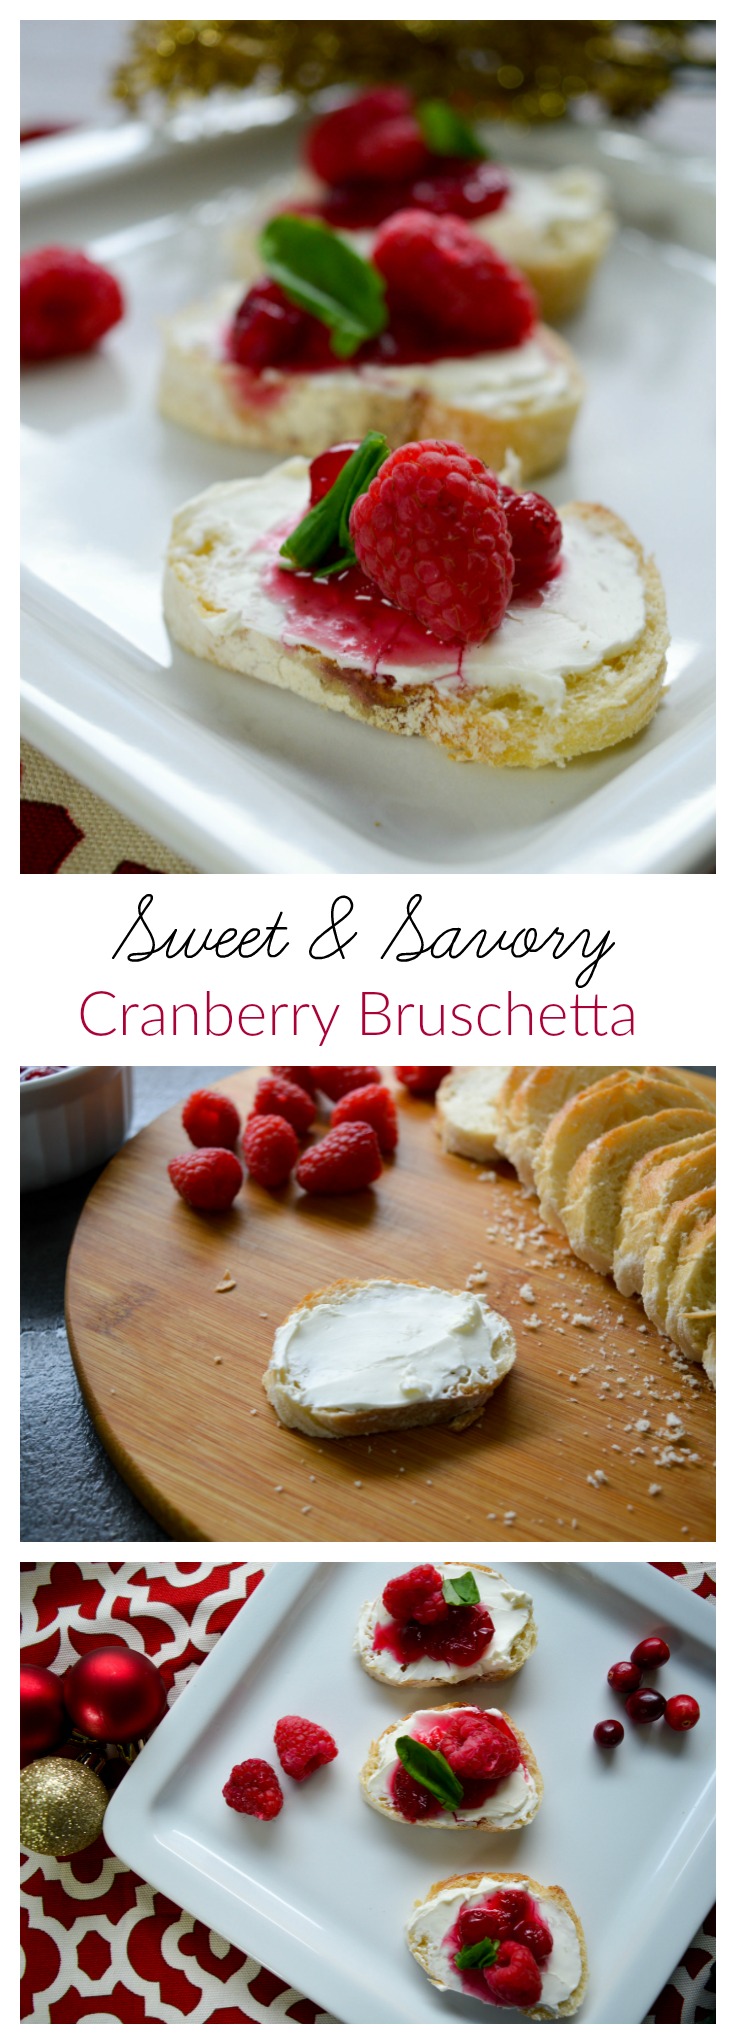 cranberry-bruschetta-crostini